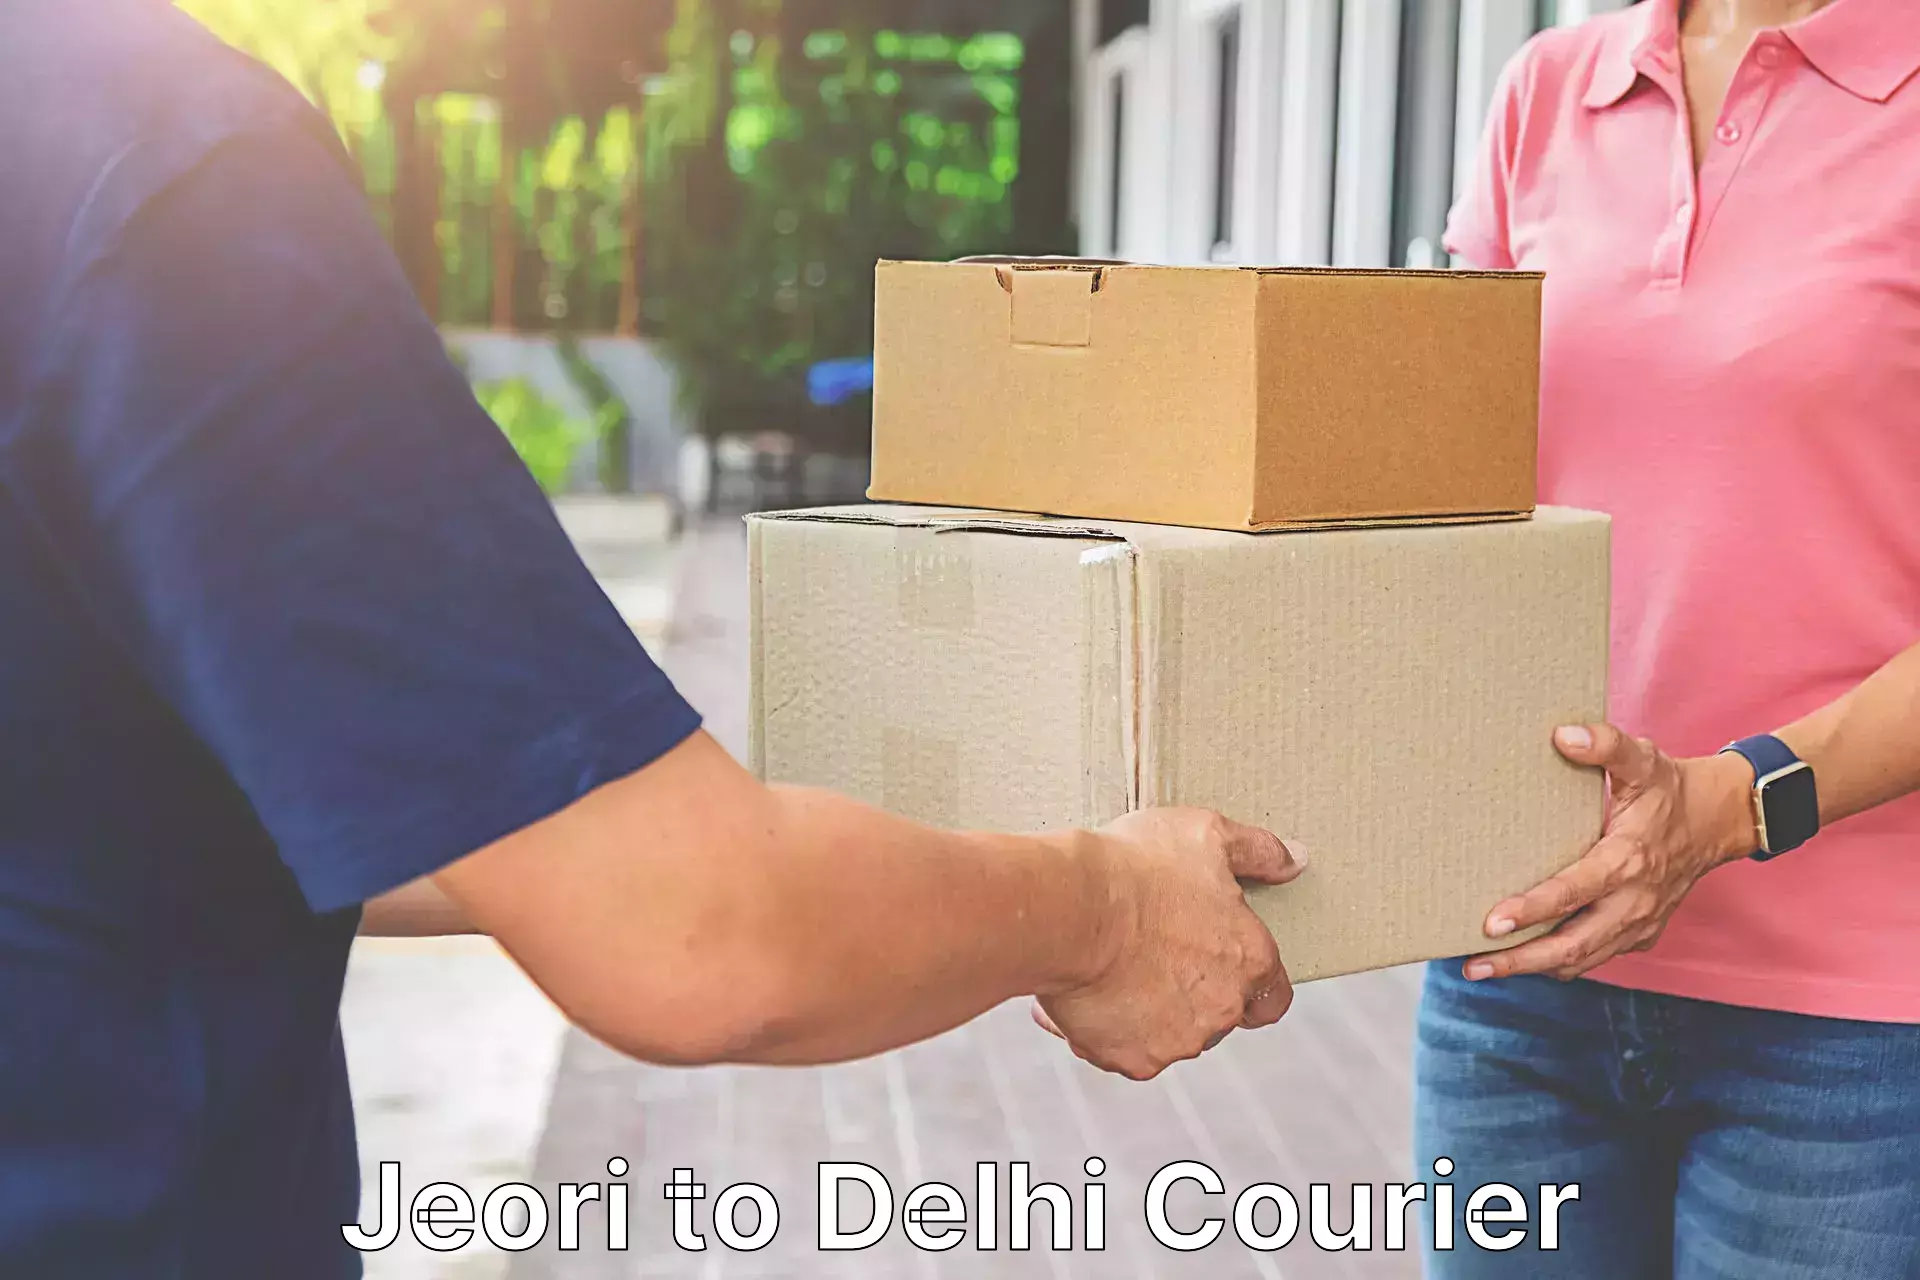 Premium delivery services Jeori to Delhi